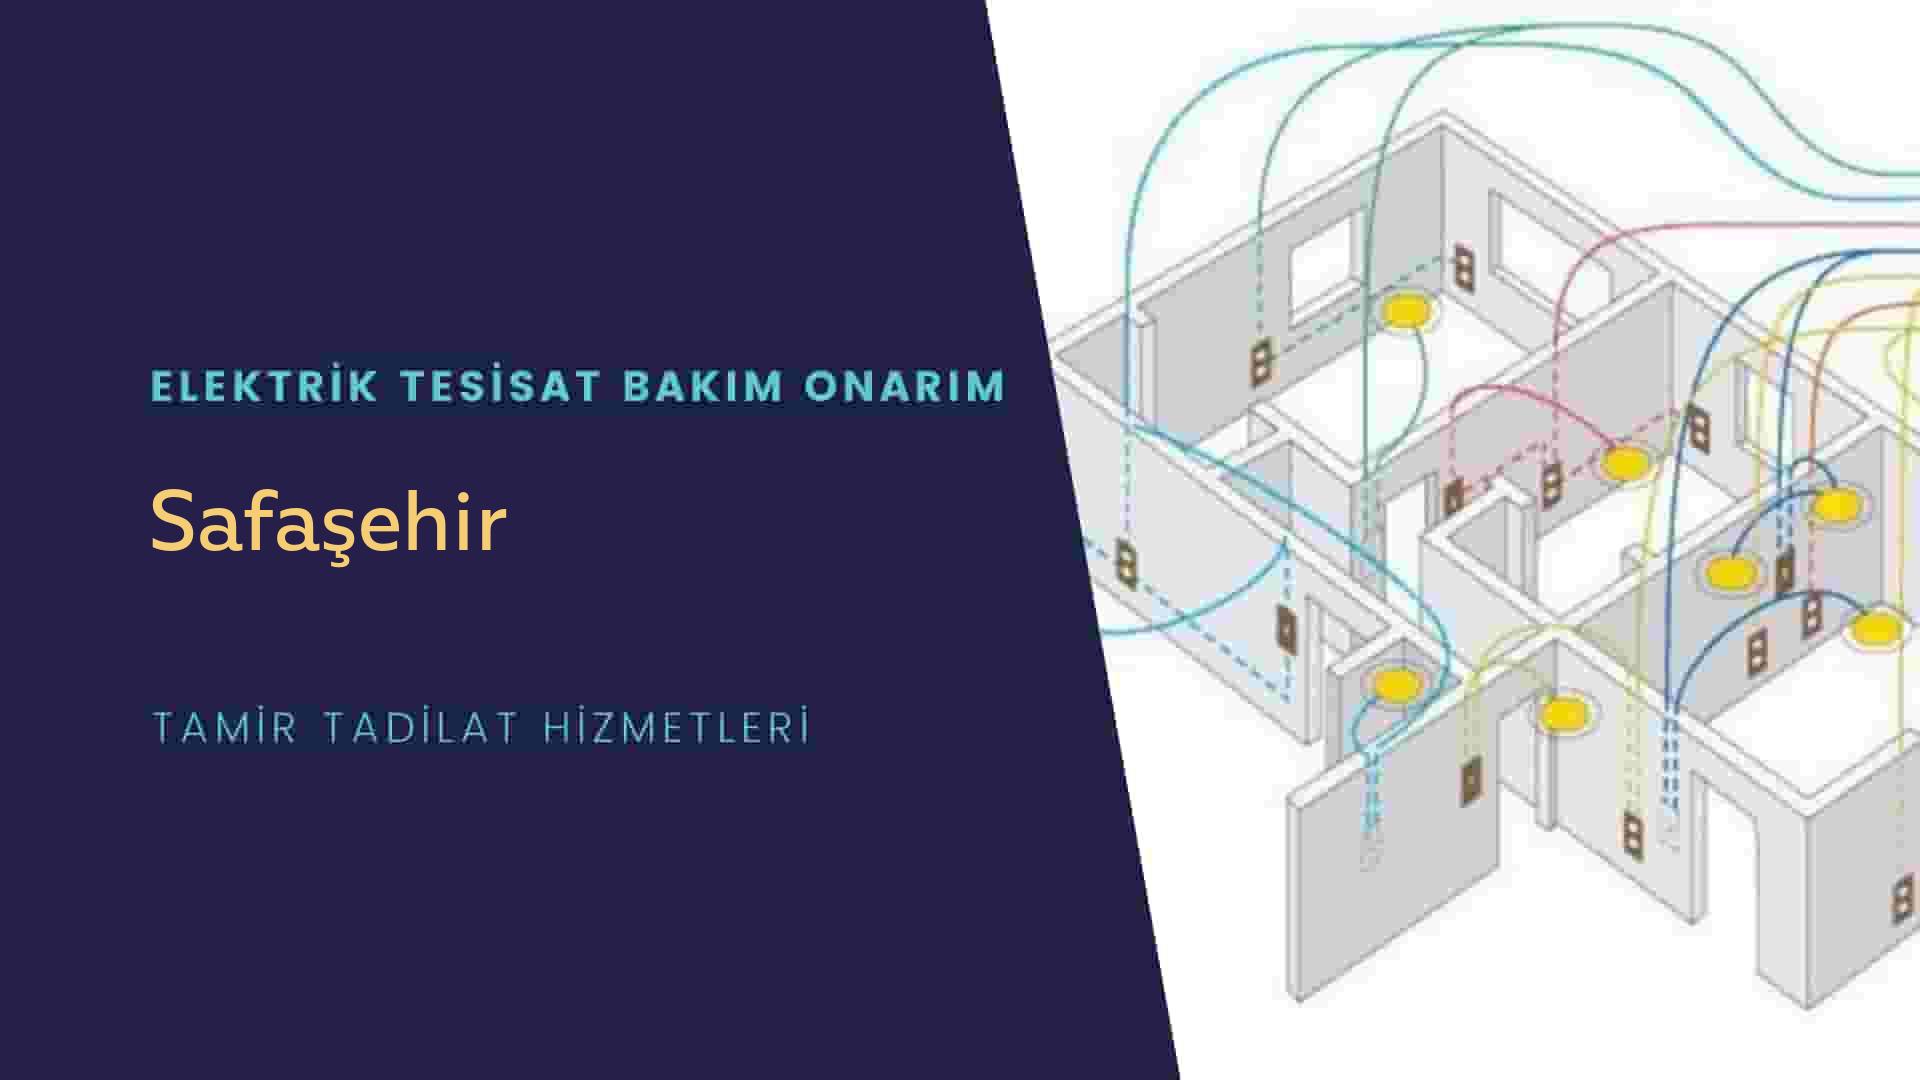 Safaşehir'de elektrik tesisatı ustalarımı arıyorsunuz doğru adrestenizi Safaşehir elektrik tesisatı ustalarımız 7/24 sizlere hizmet vermekten mutluluk duyar.